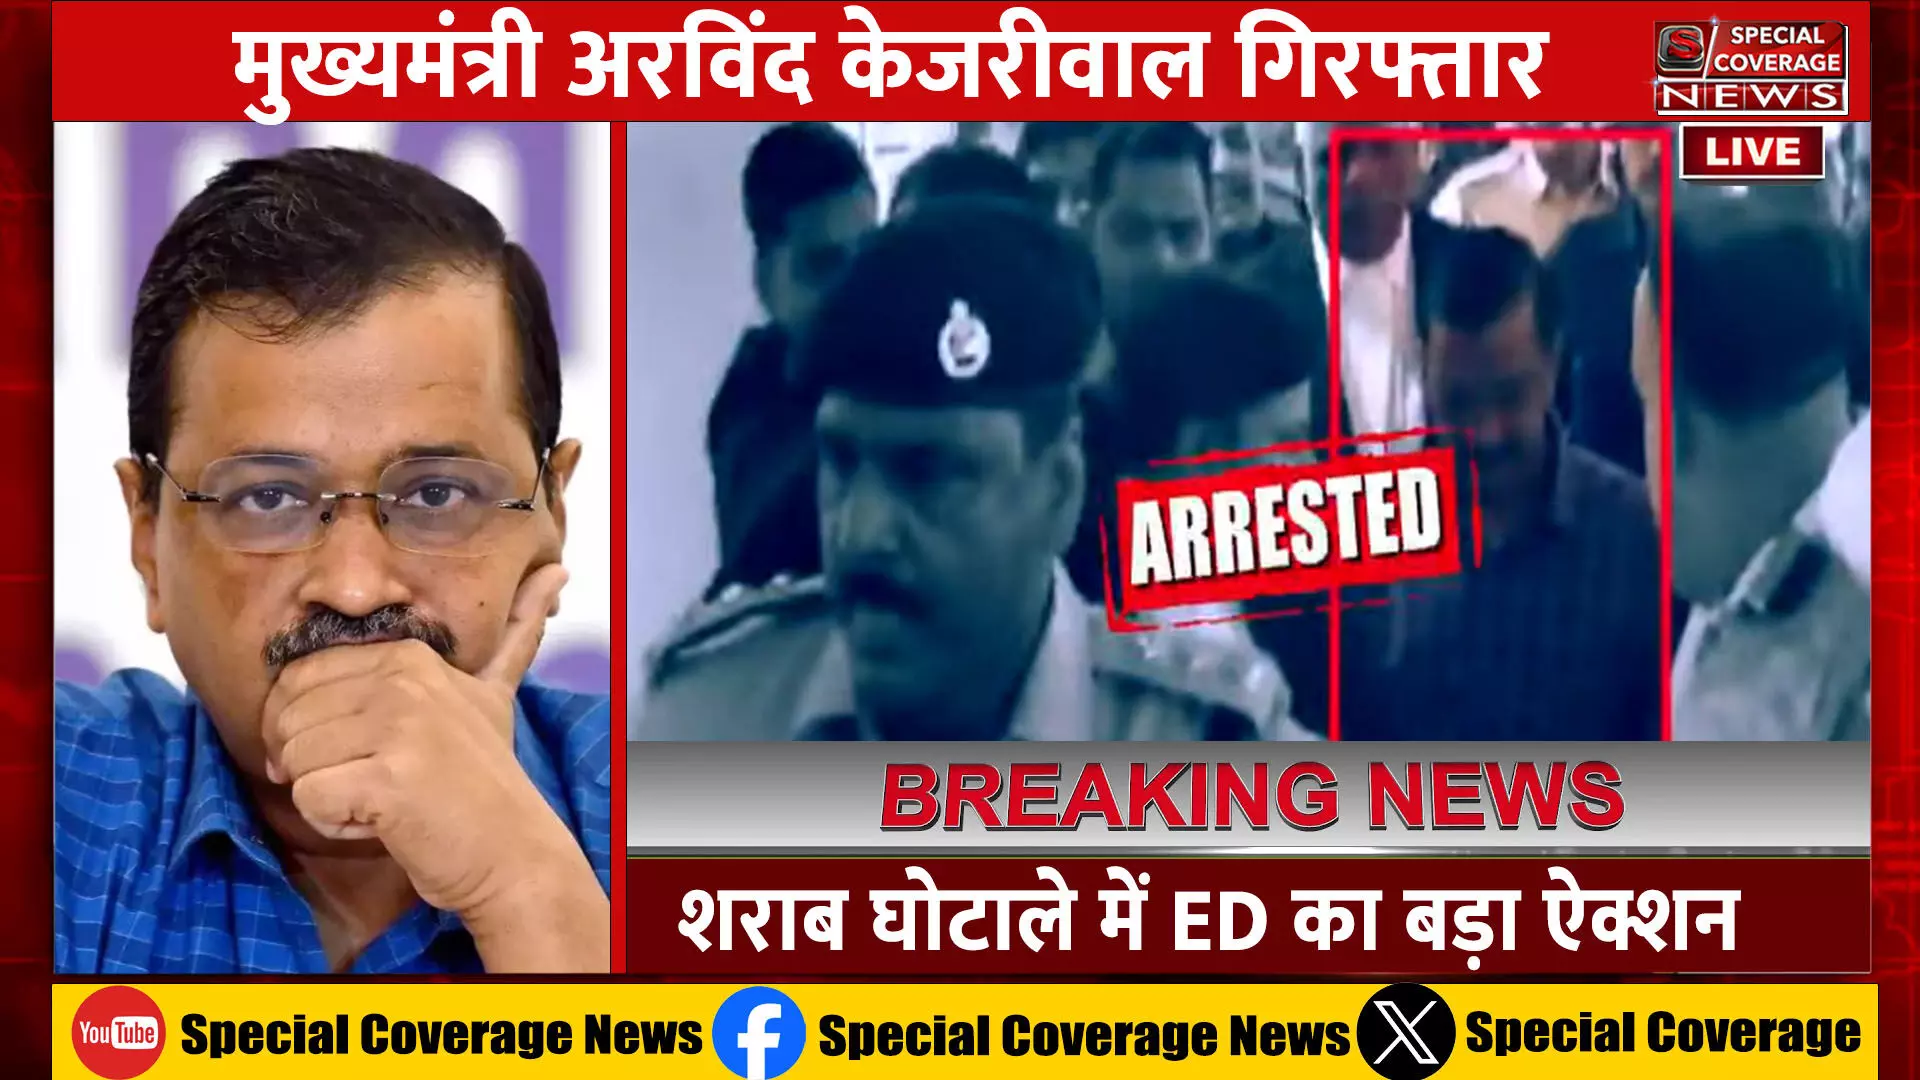 CM Arvind Kejriwal Arrested : मुख्यमंत्री अरविंद केजरीवाल गिरफ्तार, ईडी का एक्शन, सुप्रीम कोर्ट पहुंची आप तत्काल सुनवाई की गुजारिश!